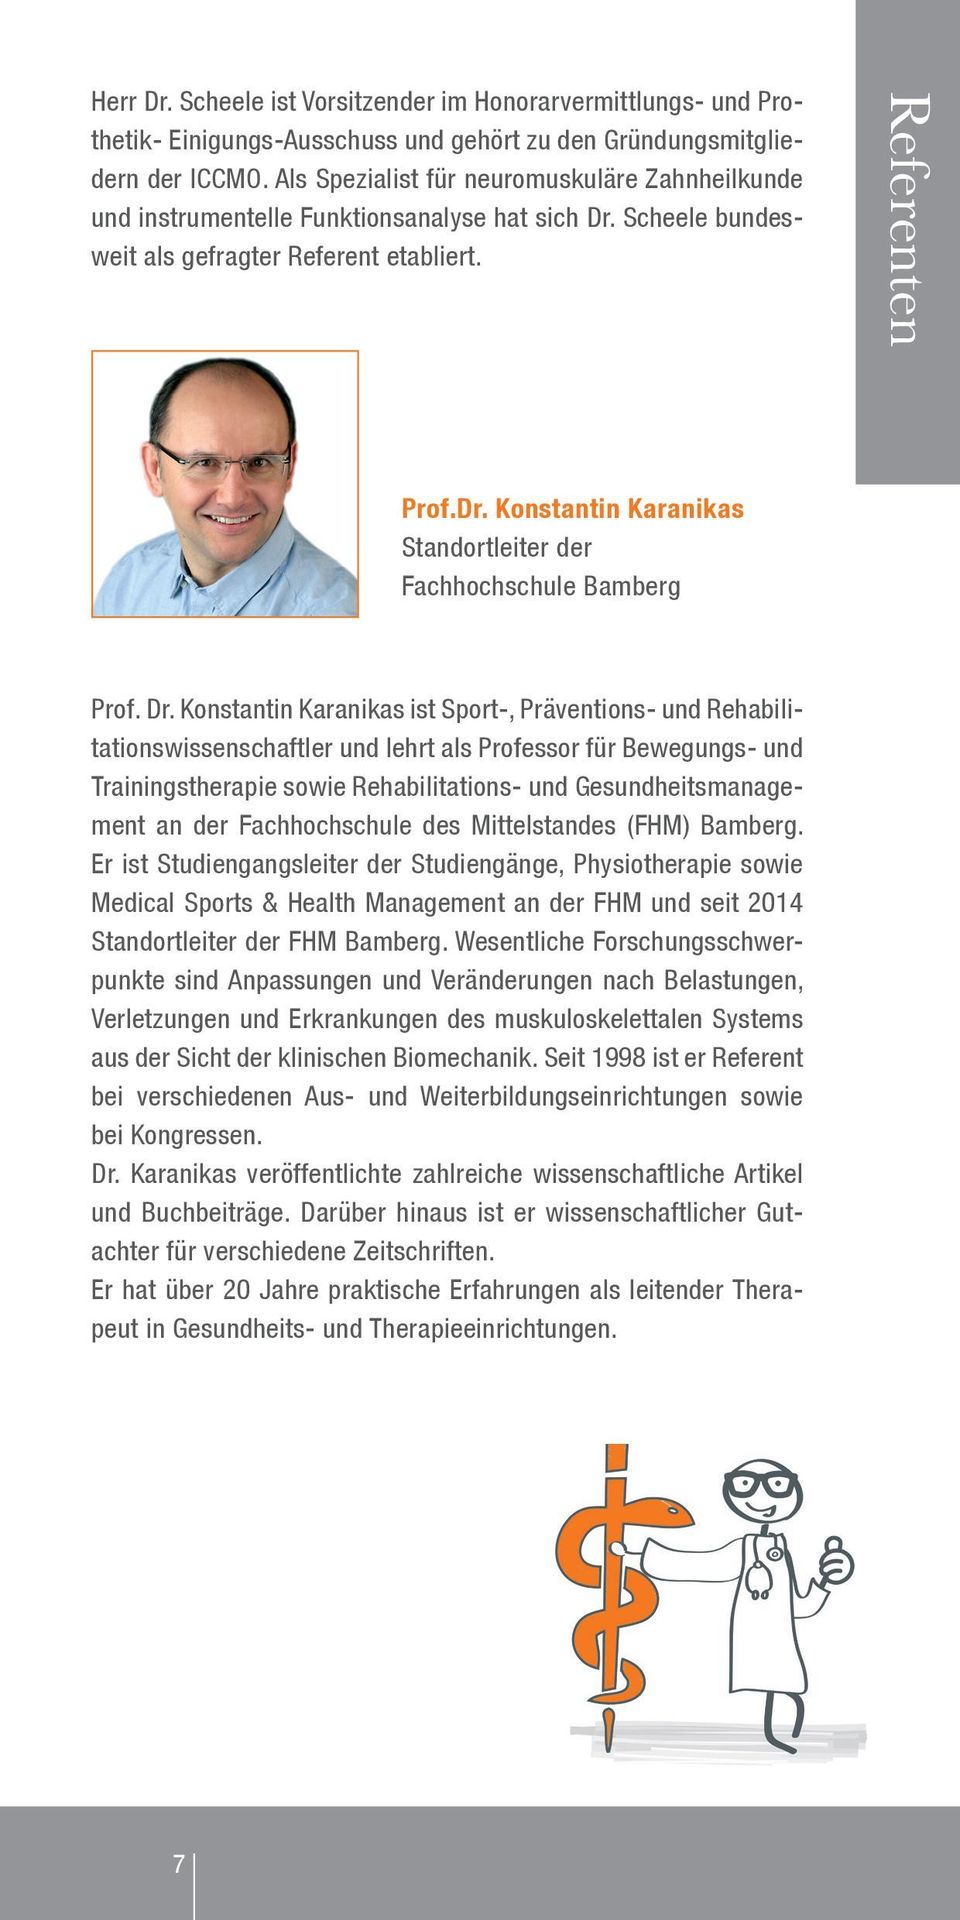 Dr. Konstantin Karanikas ist Sport-, Präventions- und Rehabilitationswissenschaftler und lehrt als Professor für Bewegungs- und Trainingstherapie sowie Rehabilitations- und Gesundheitsmanagement an